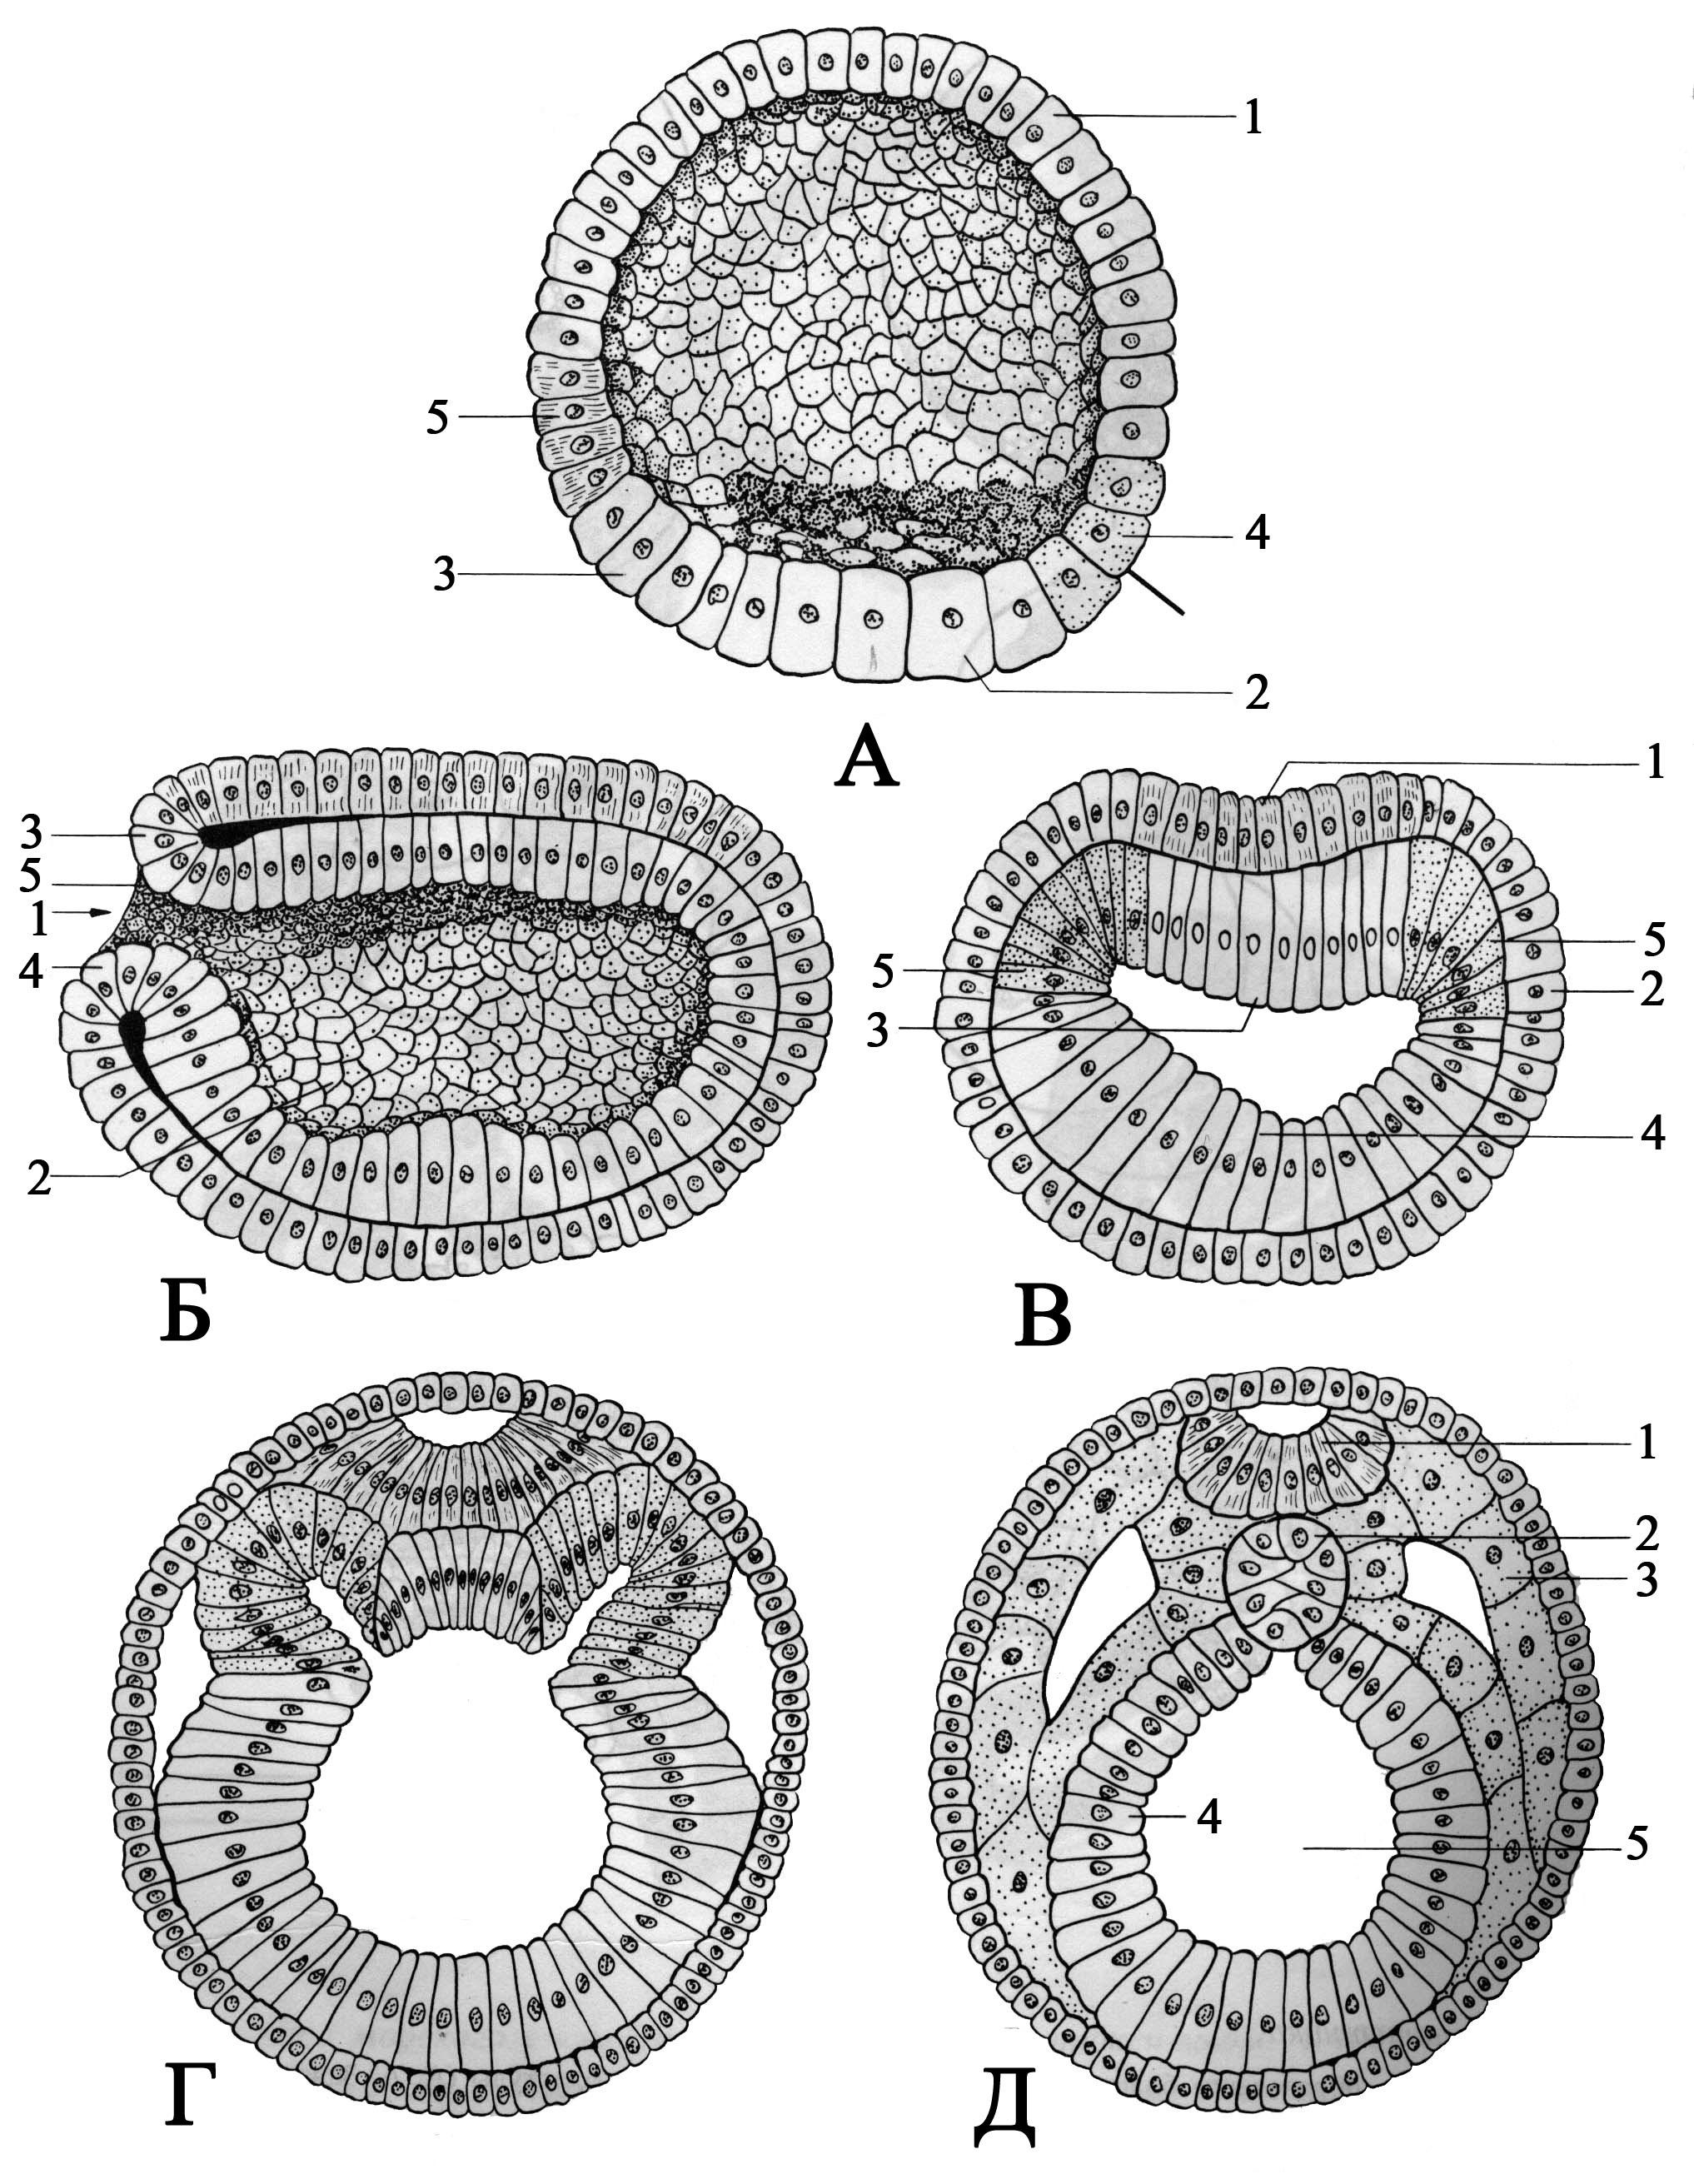 Какой процесс в цикле развития ланцетника изображен. Гаструляция зародыша ланцетника. Бластопор ланцетника. Зародыш ланцетника гаструляции эмбриона. Эмбриогенез ланцетника.